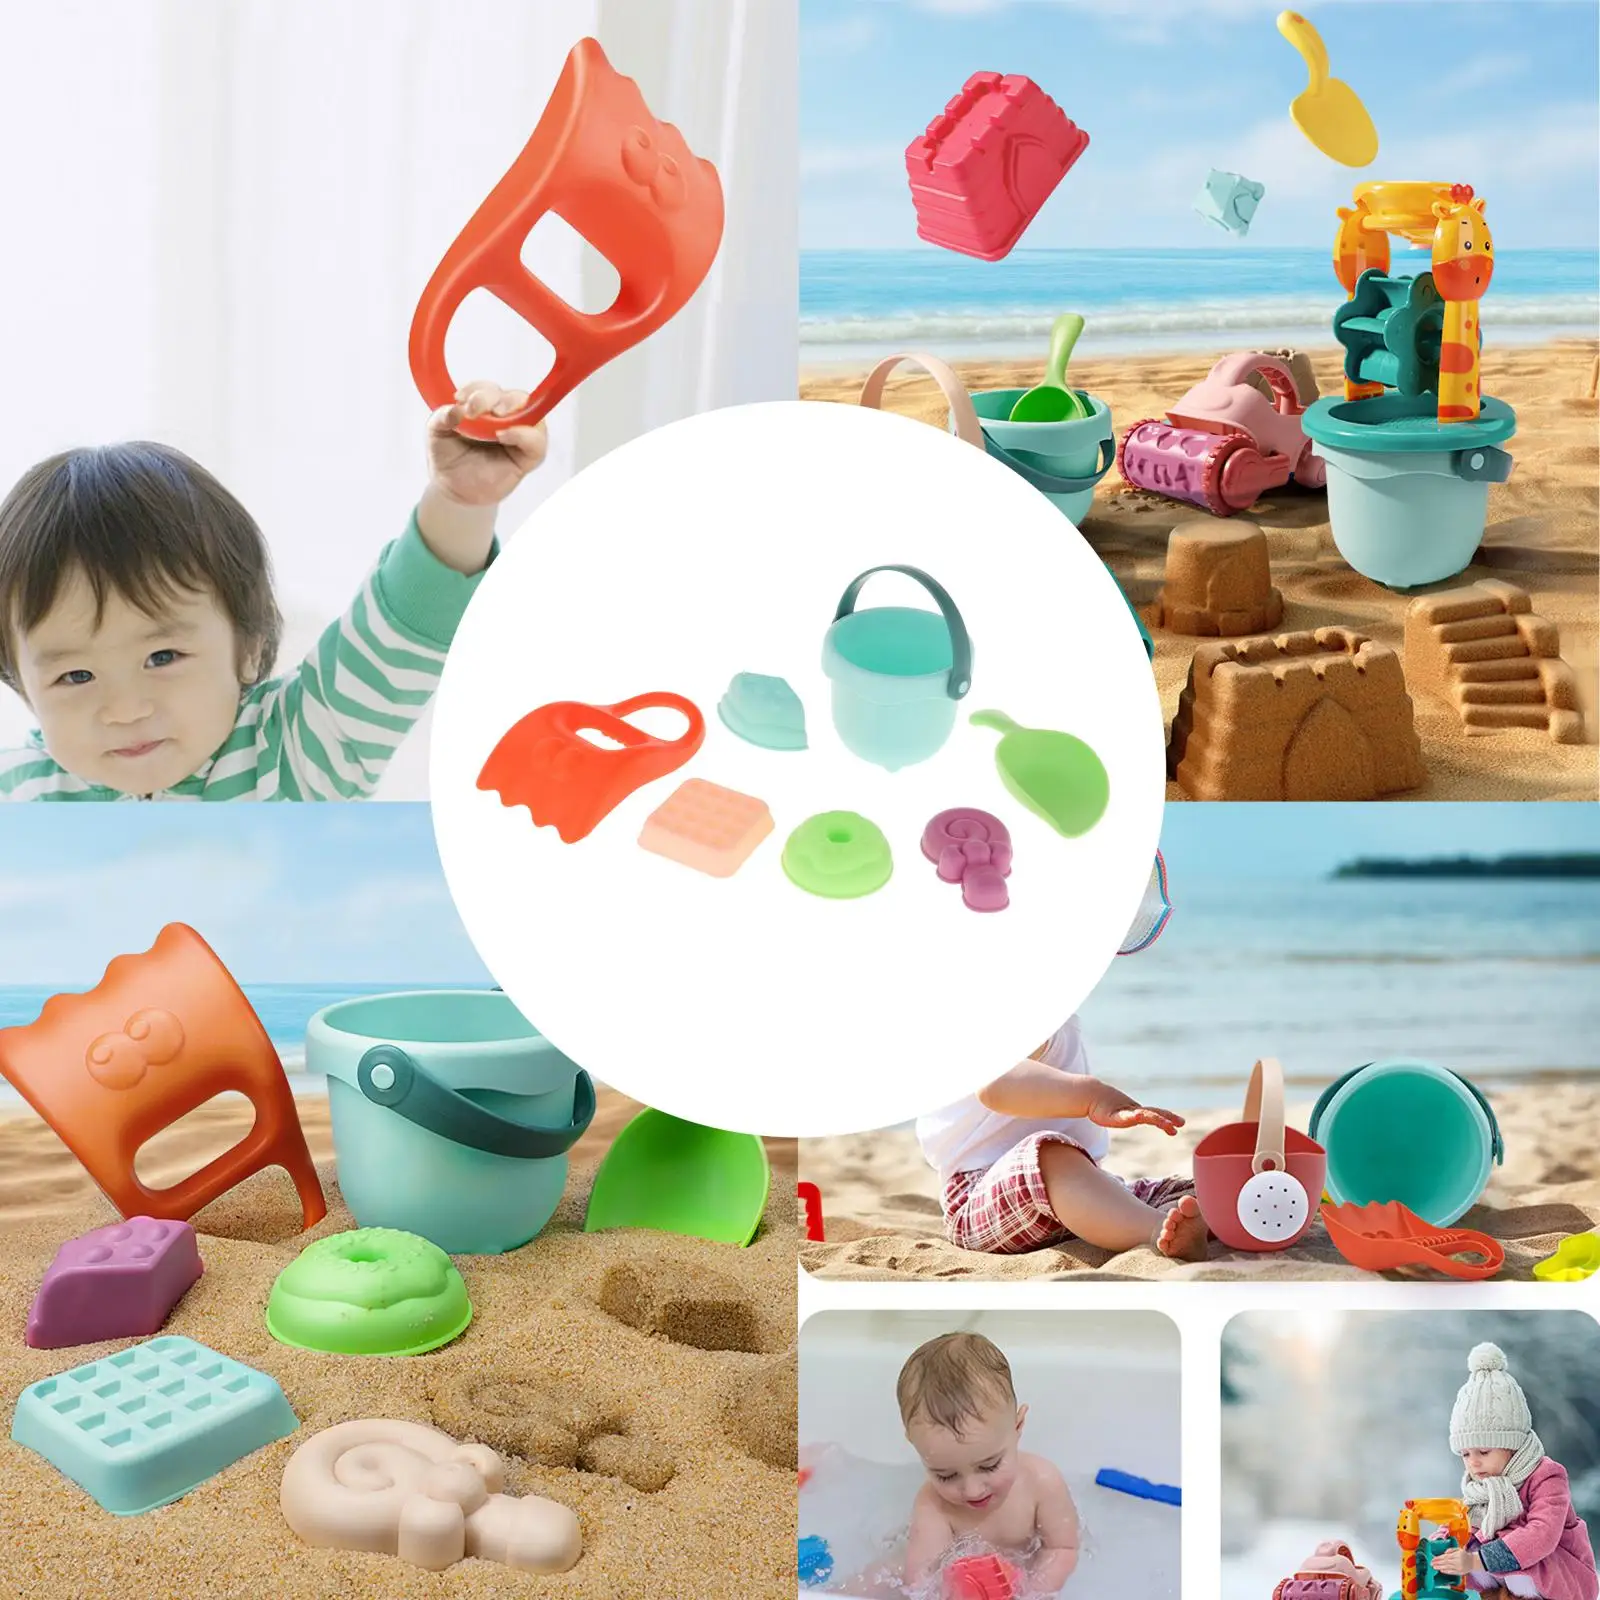 

Детский Забавный пляжный песок, набор игрушек, песочный ящик, лопаты, грабли, набор инструментов